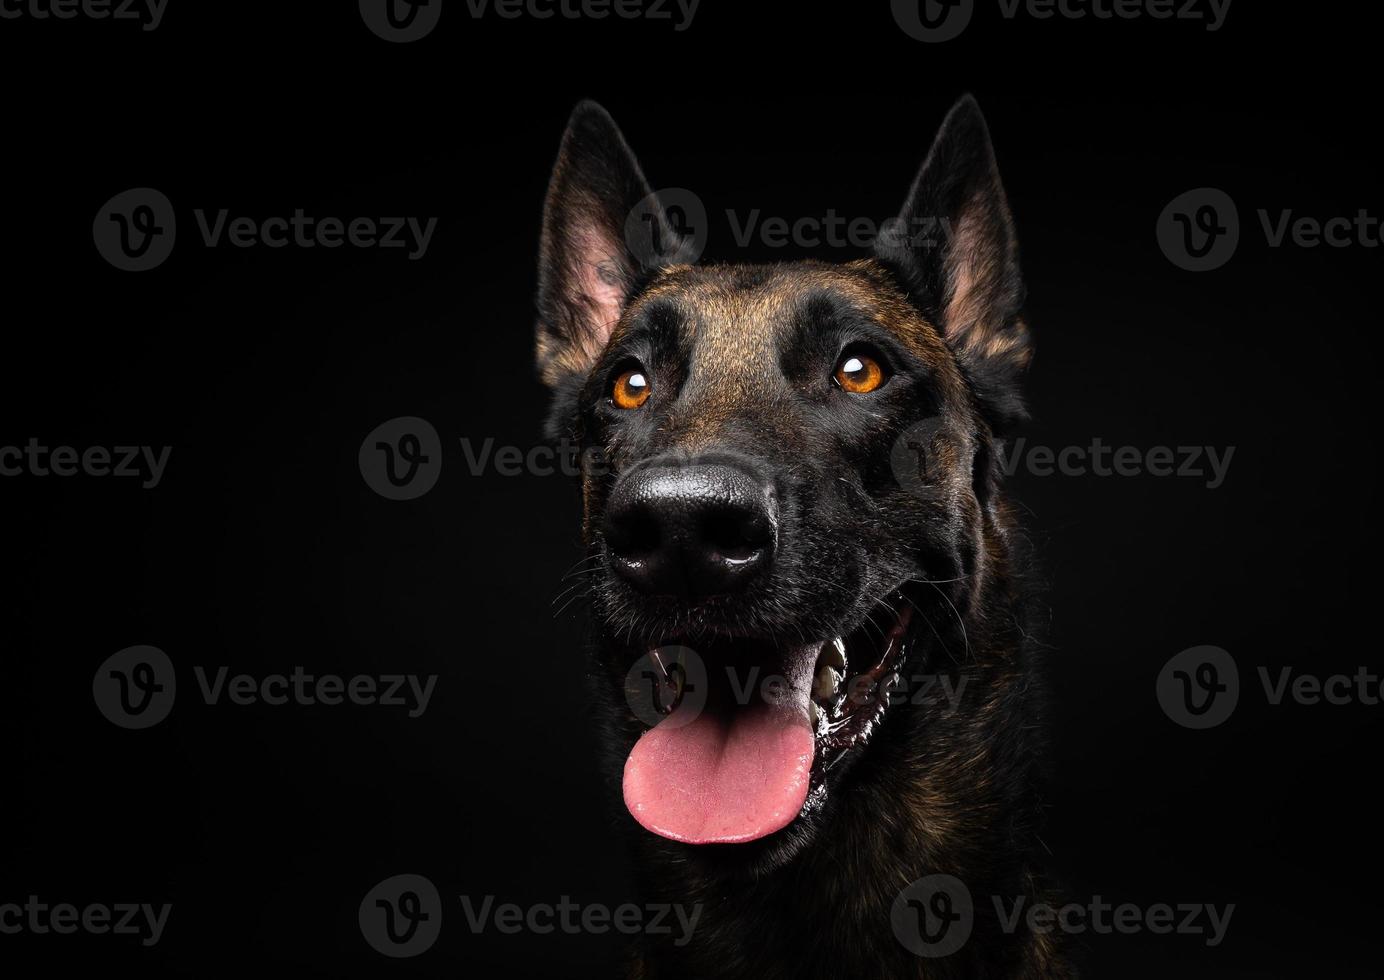 retrato de um cão pastor belga em um fundo preto isolado. foto